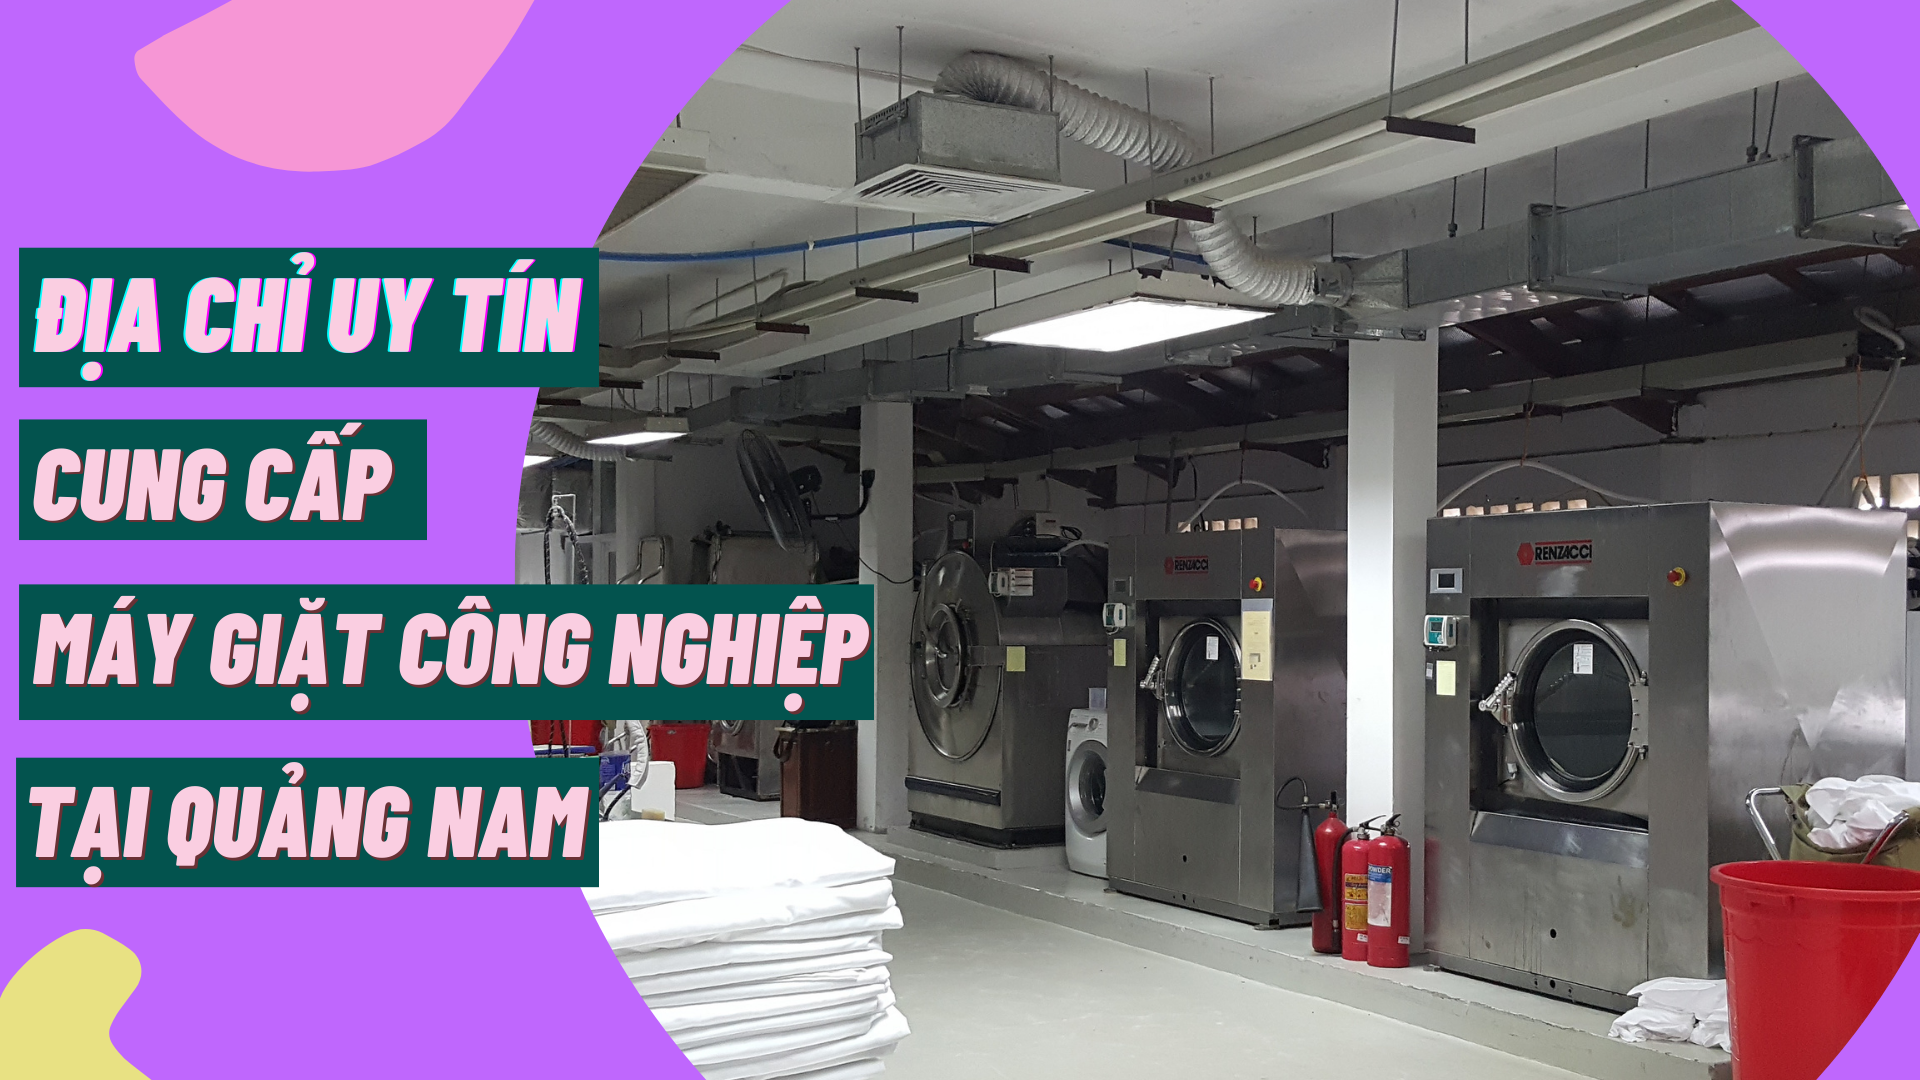 Địa chỉ uy tín cung cấp máy giặt công nghiệp tại Quảng Nam